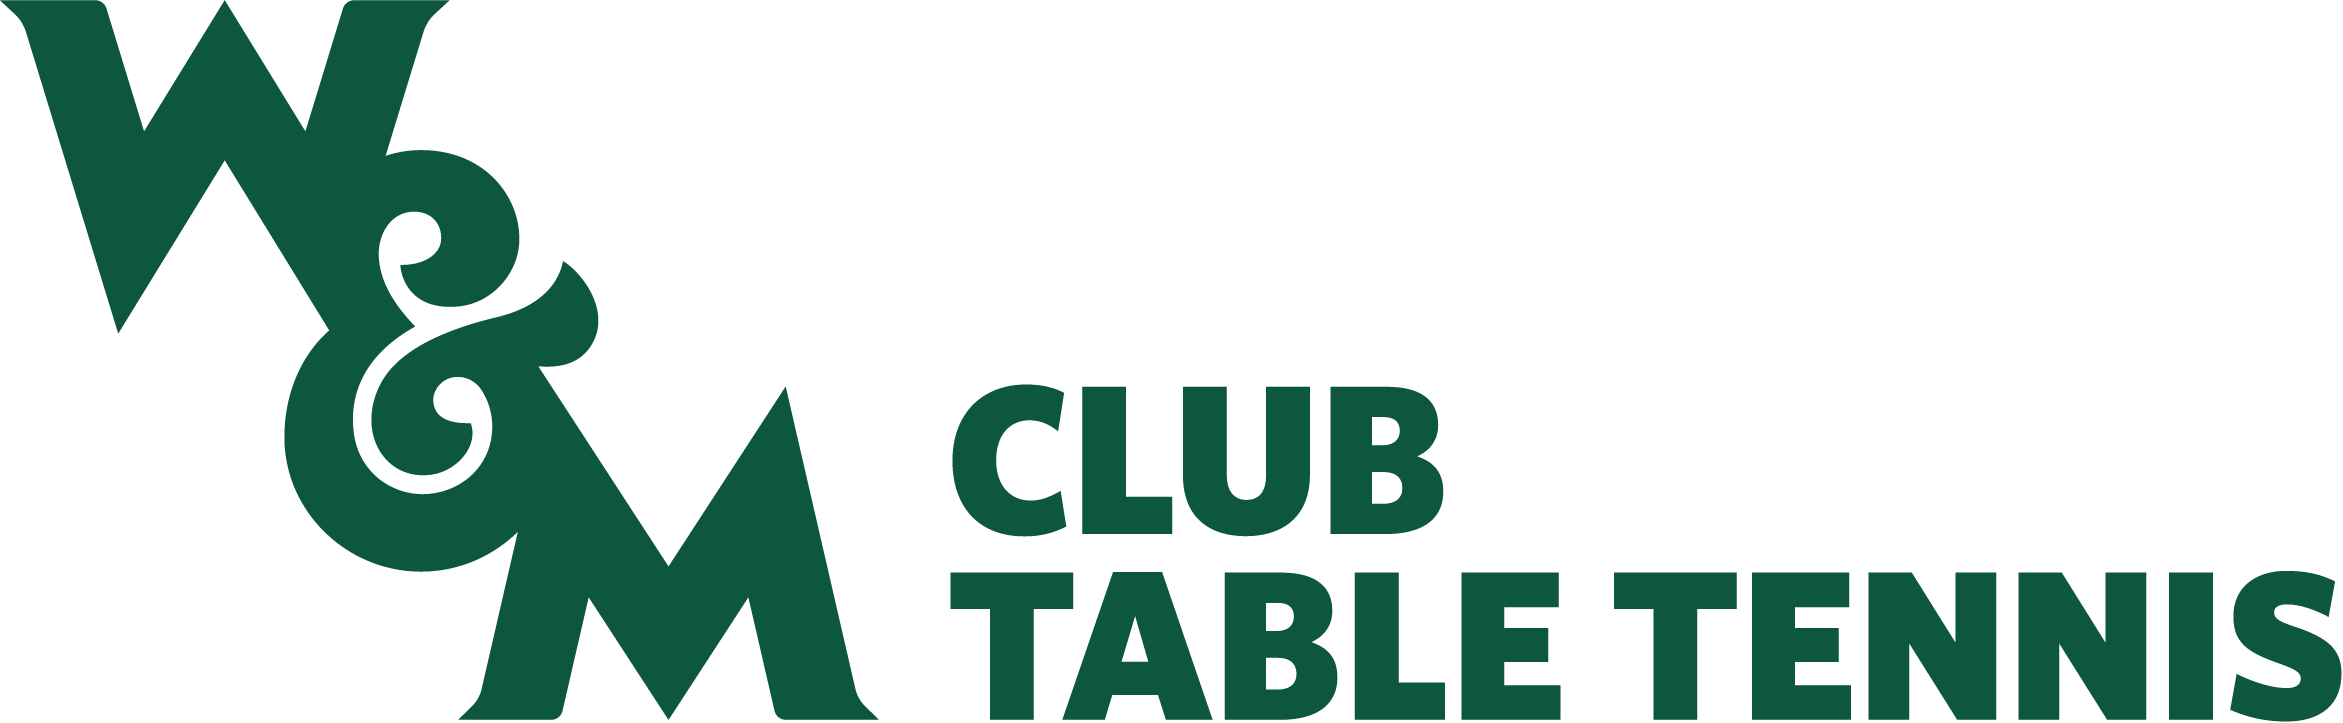 Table Tennis Club Logo